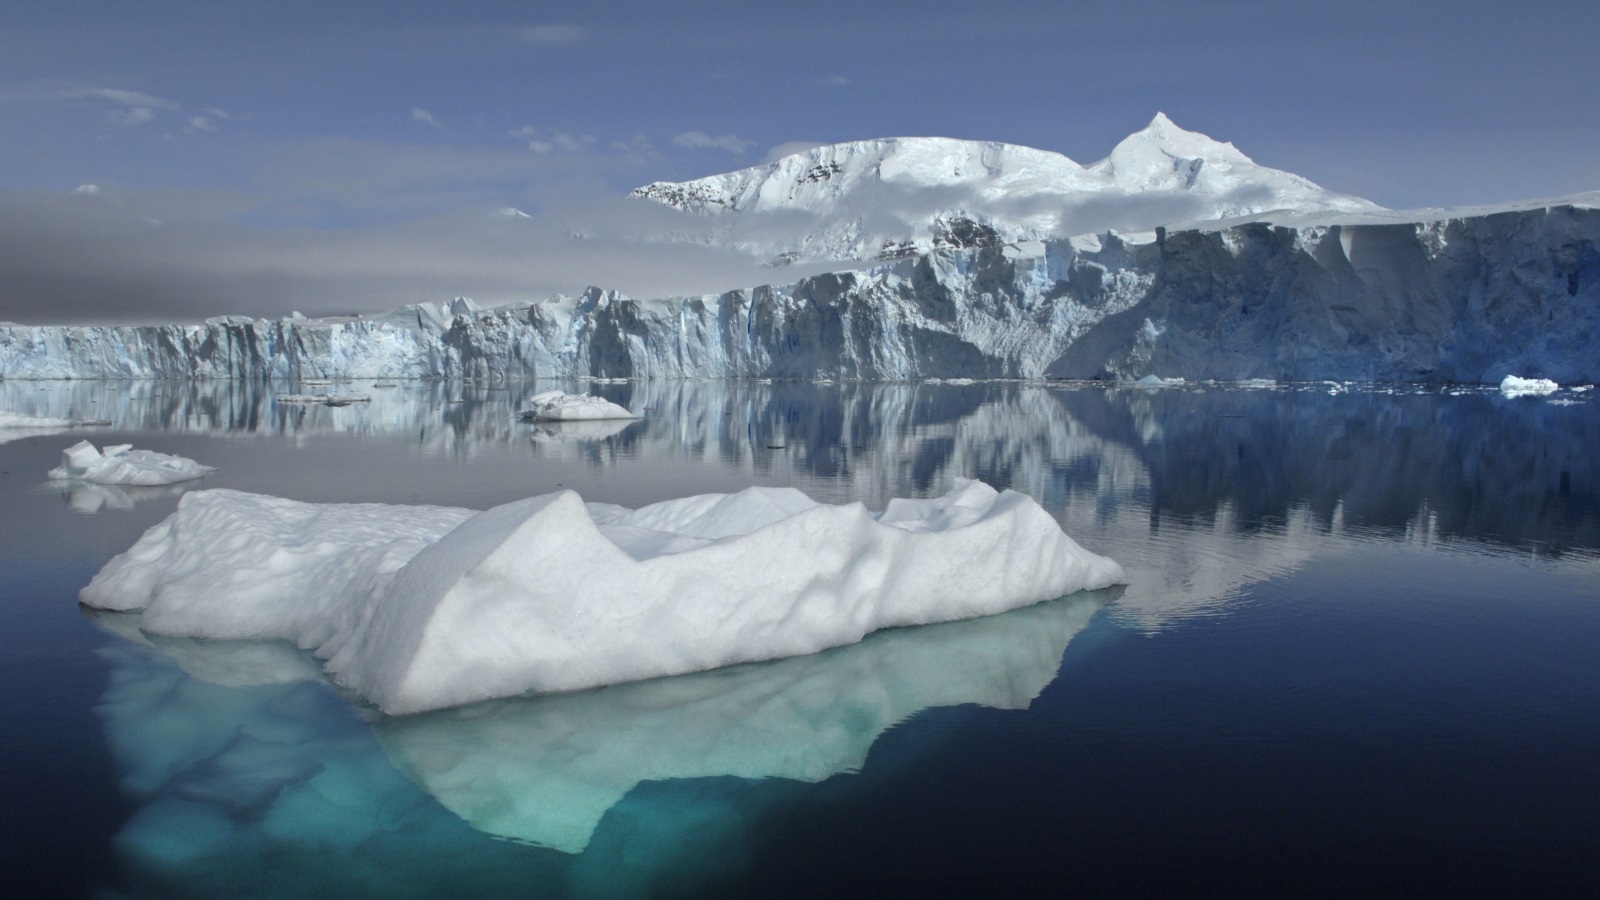 ذوبان جليد القطب الجنوبي يهدد بحلقات متتابعة من الآثار التي قد تزيد ارتفاع حرارة الأرض أكثر من المتوقع (رويترز)